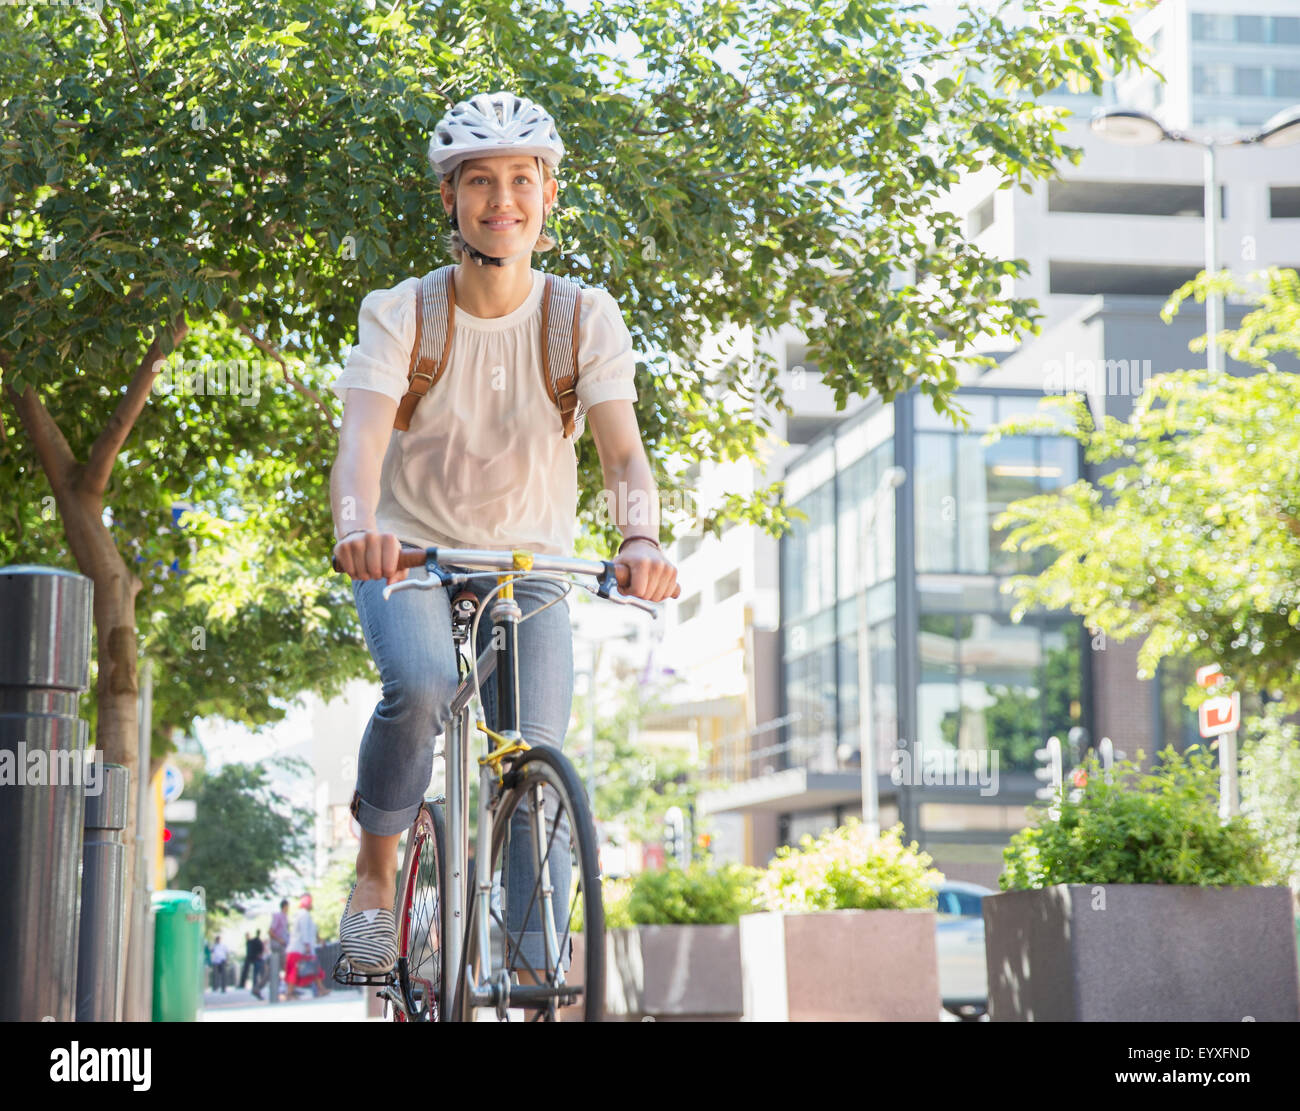 Retrato mujer sonriente en casco de bicicleta Equitación en parque urbano Foto de stock